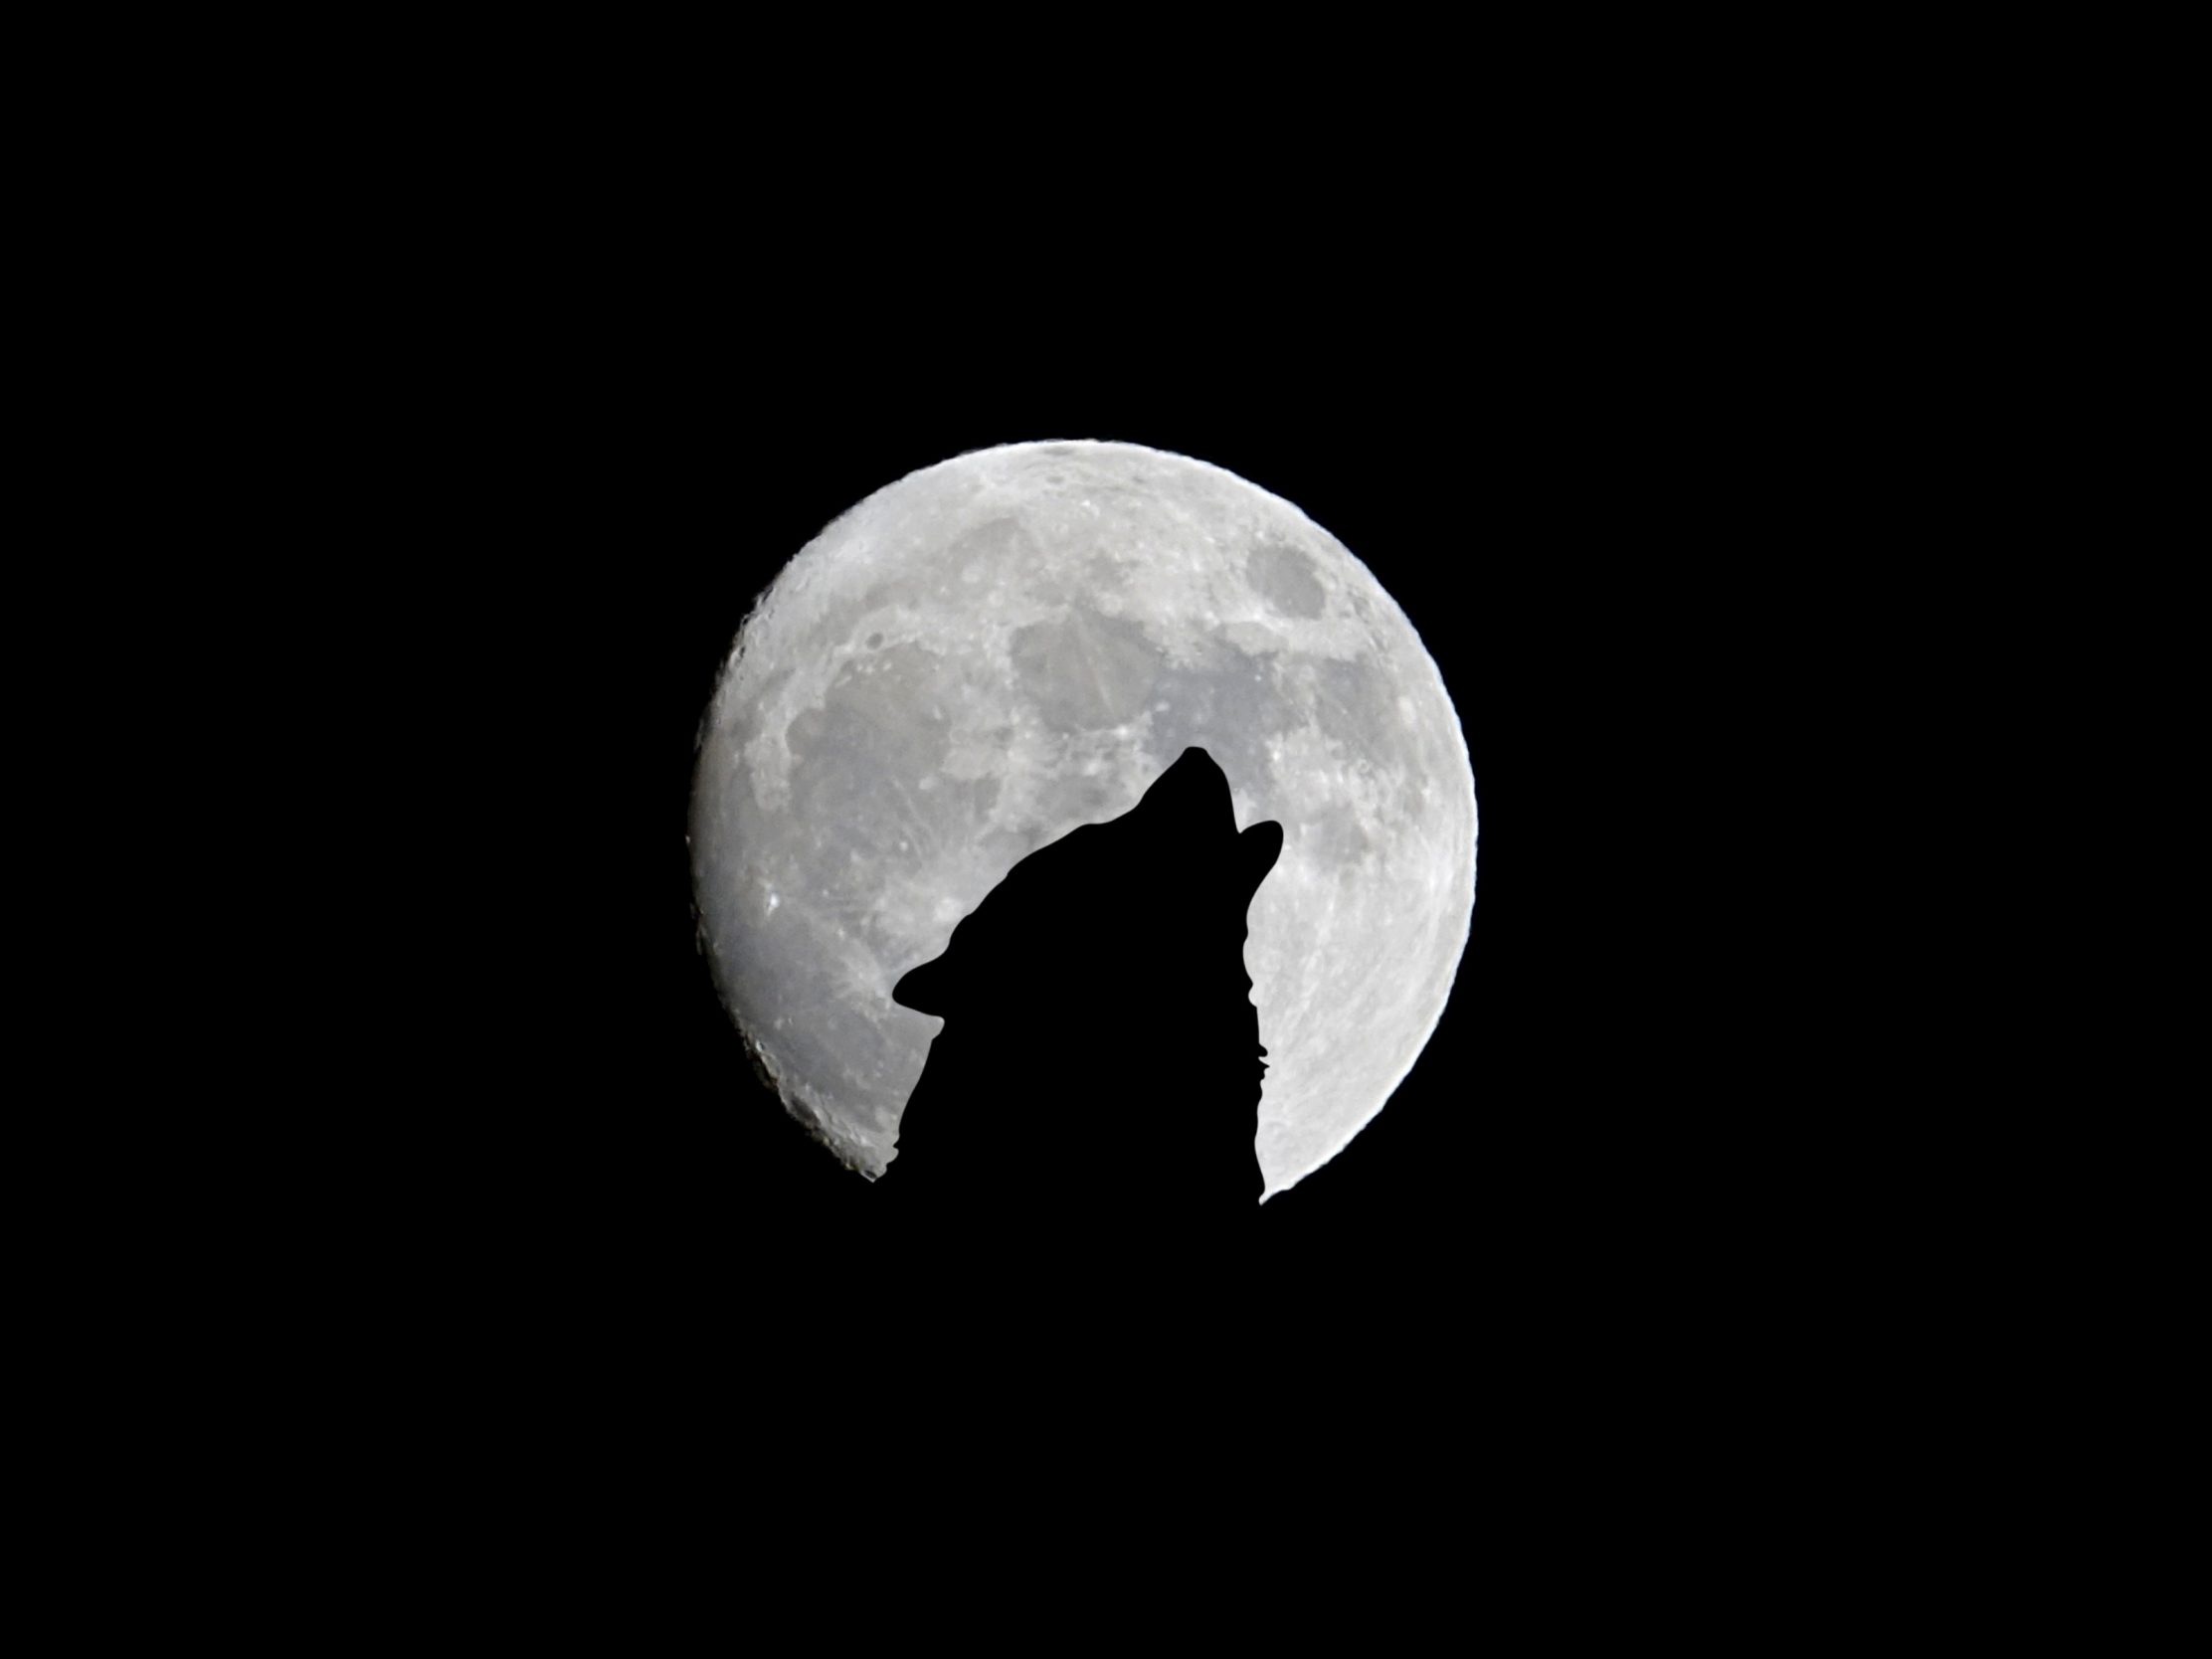 2224x1668 iPad Pro wallpapers Silhouette of Wolf Full Moon Night Darkness iPad Wallpaper 2224x1668 pixels resolution